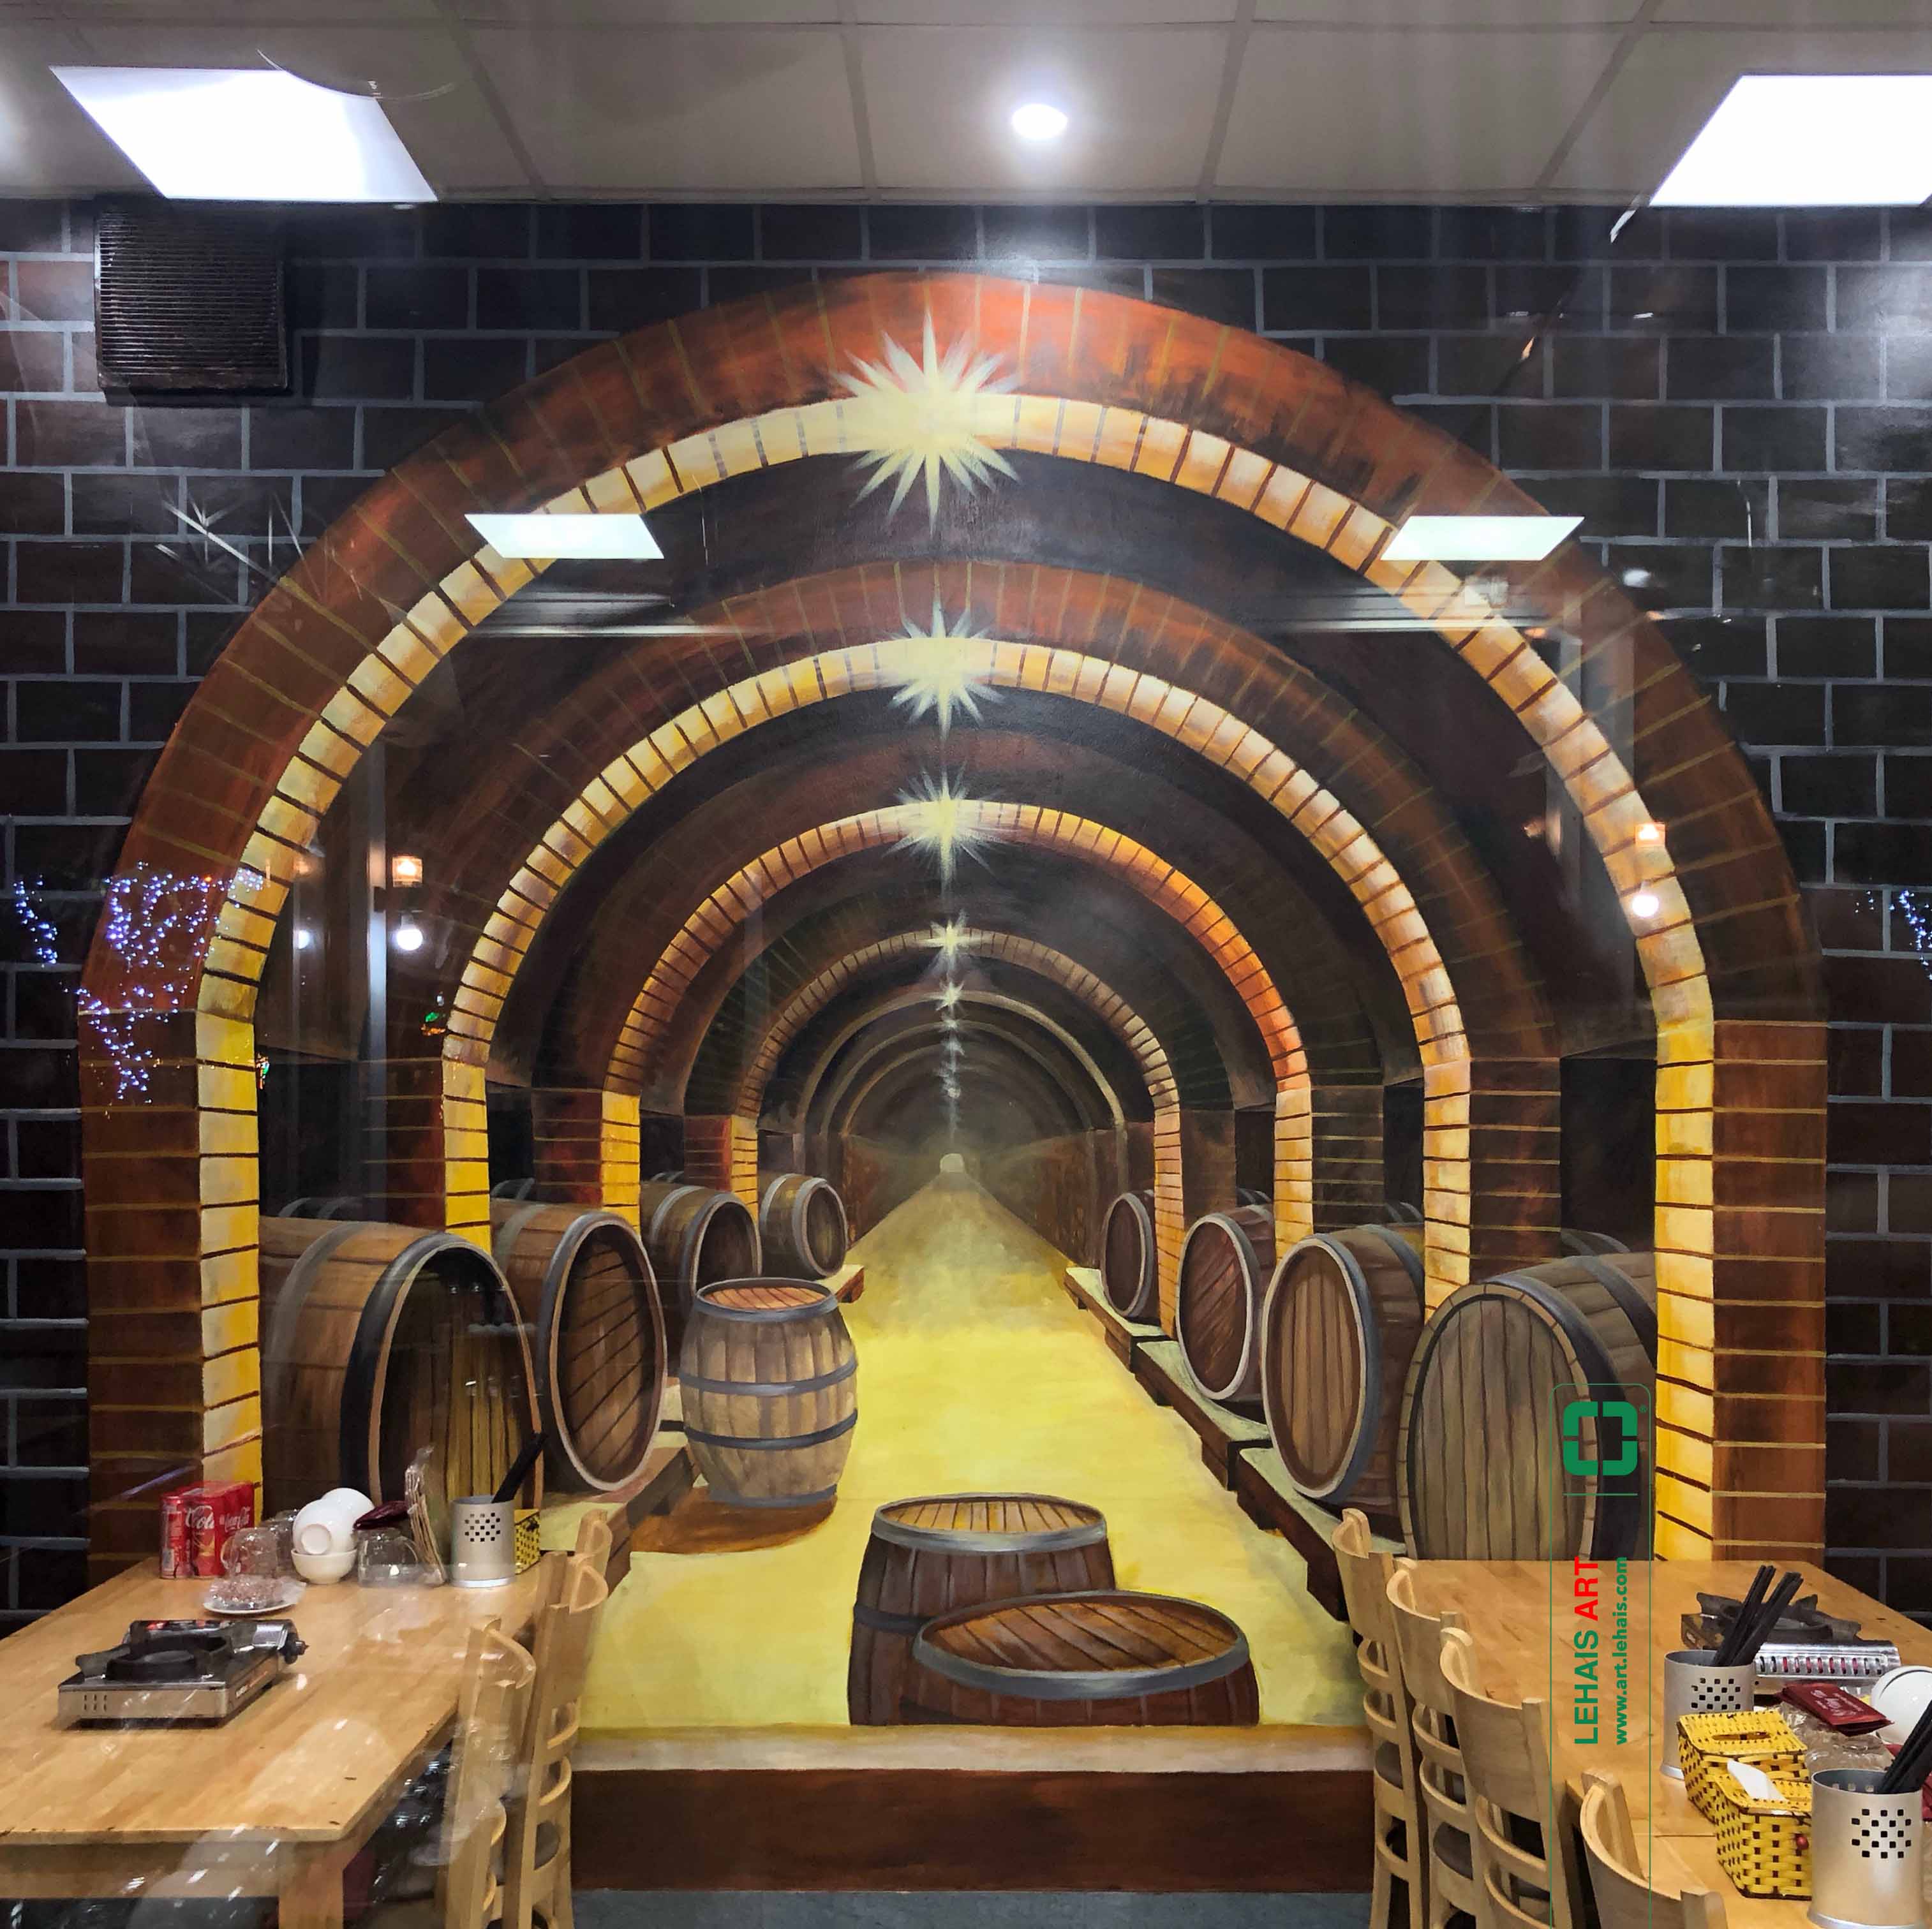 Vẽ tranh 3D trên tường hình ảnh Hầm Rượu tại nhà Hàng Hùng Tàu ở Phố Nối, Hưng Yên - TT197LHAR